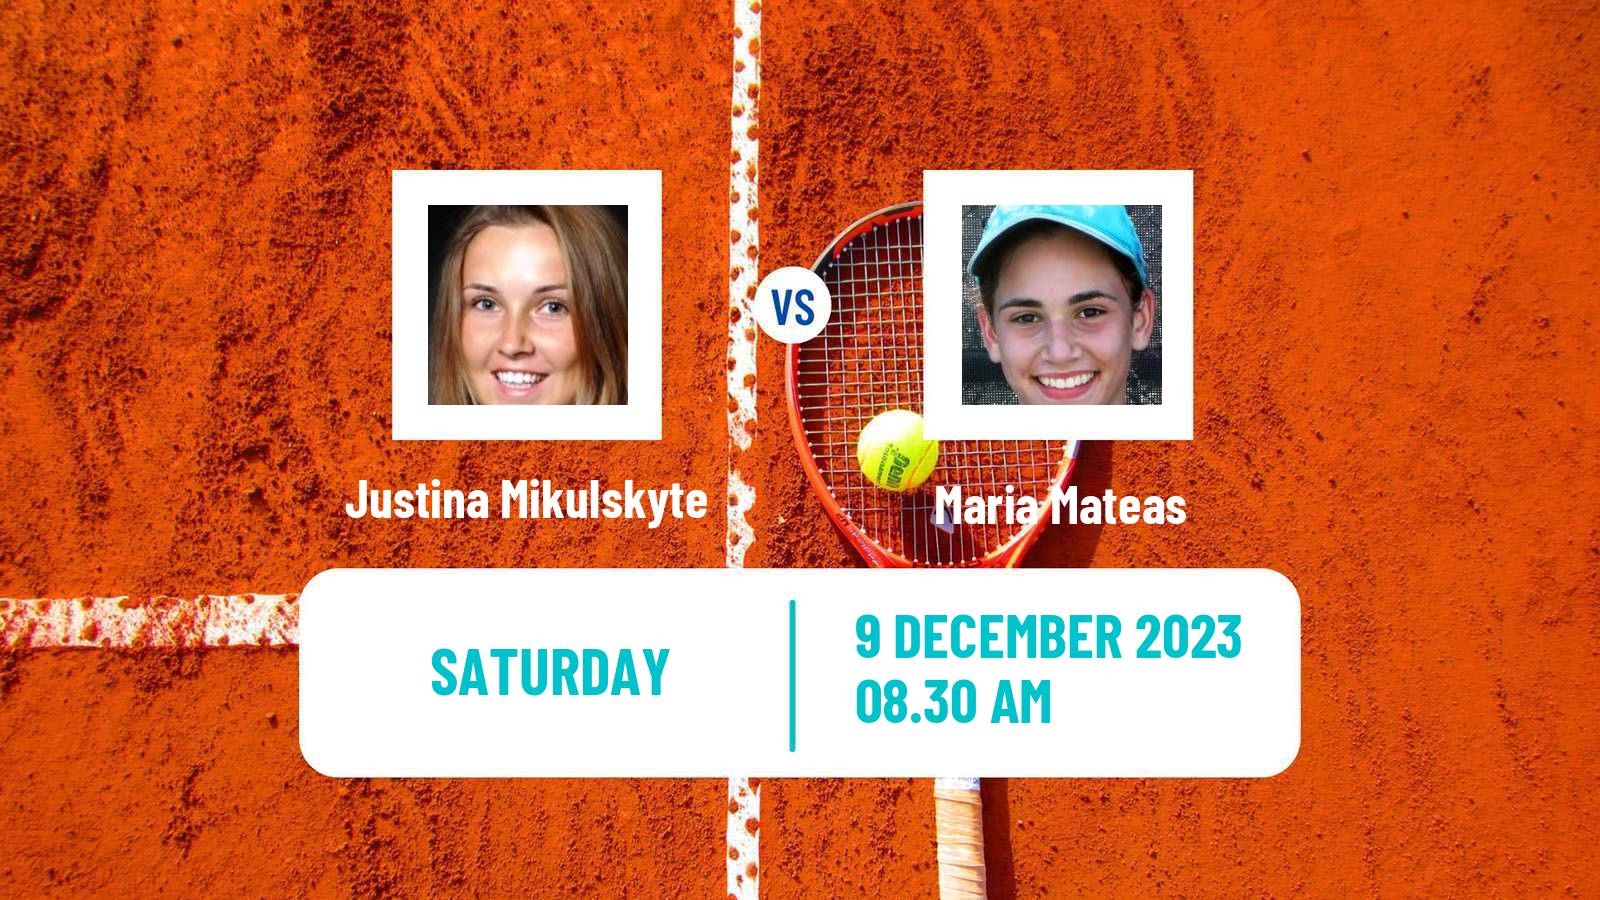 Tennis ITF W25 Mogi Das Cruzes Women Justina Mikulskyte - Maria Mateas